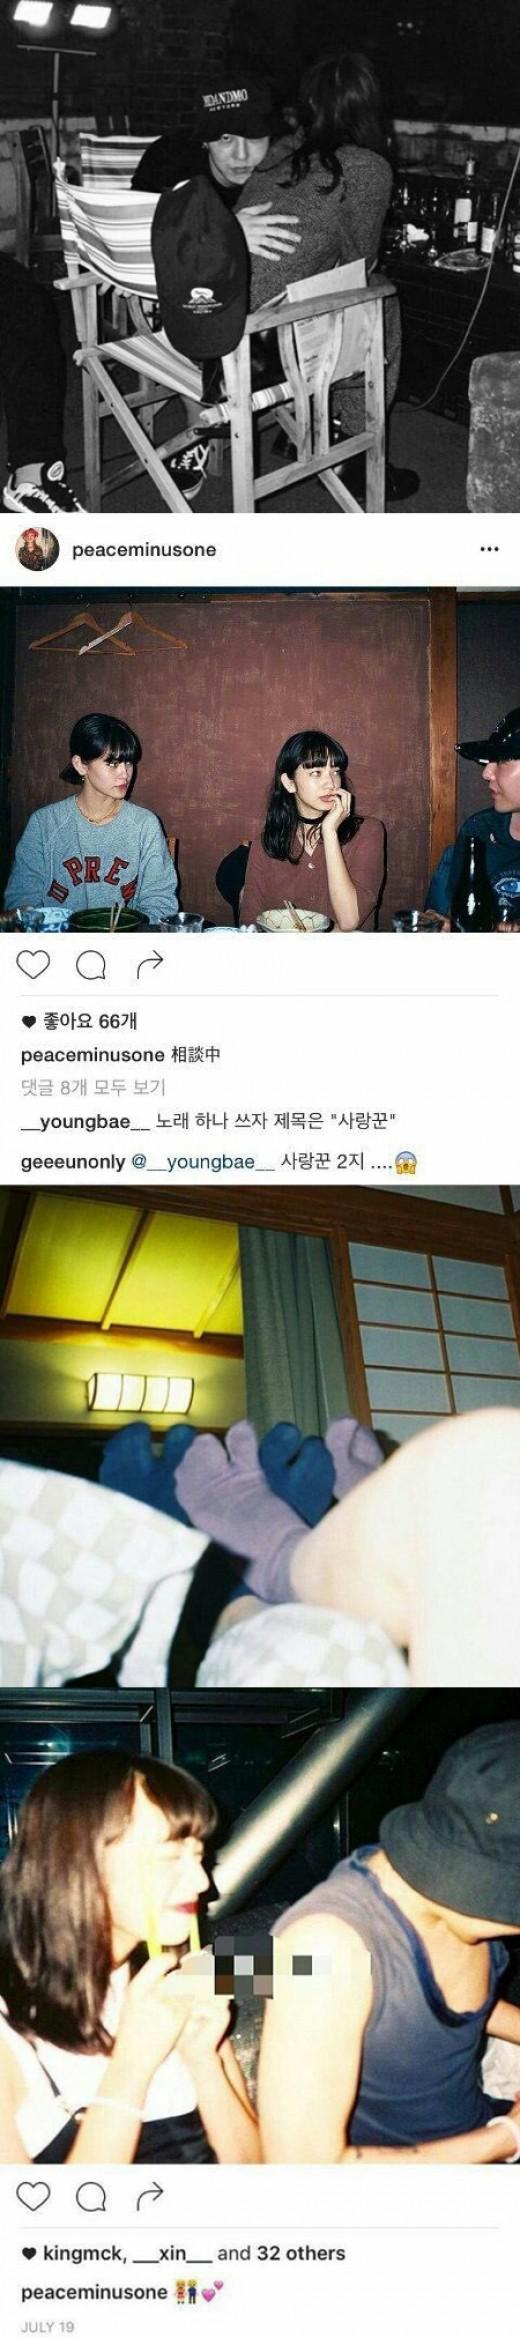 Bigbangのg Dragon 隠された私生活をキャッチ 小松菜奈と熱愛か 韓流エンターテインメント